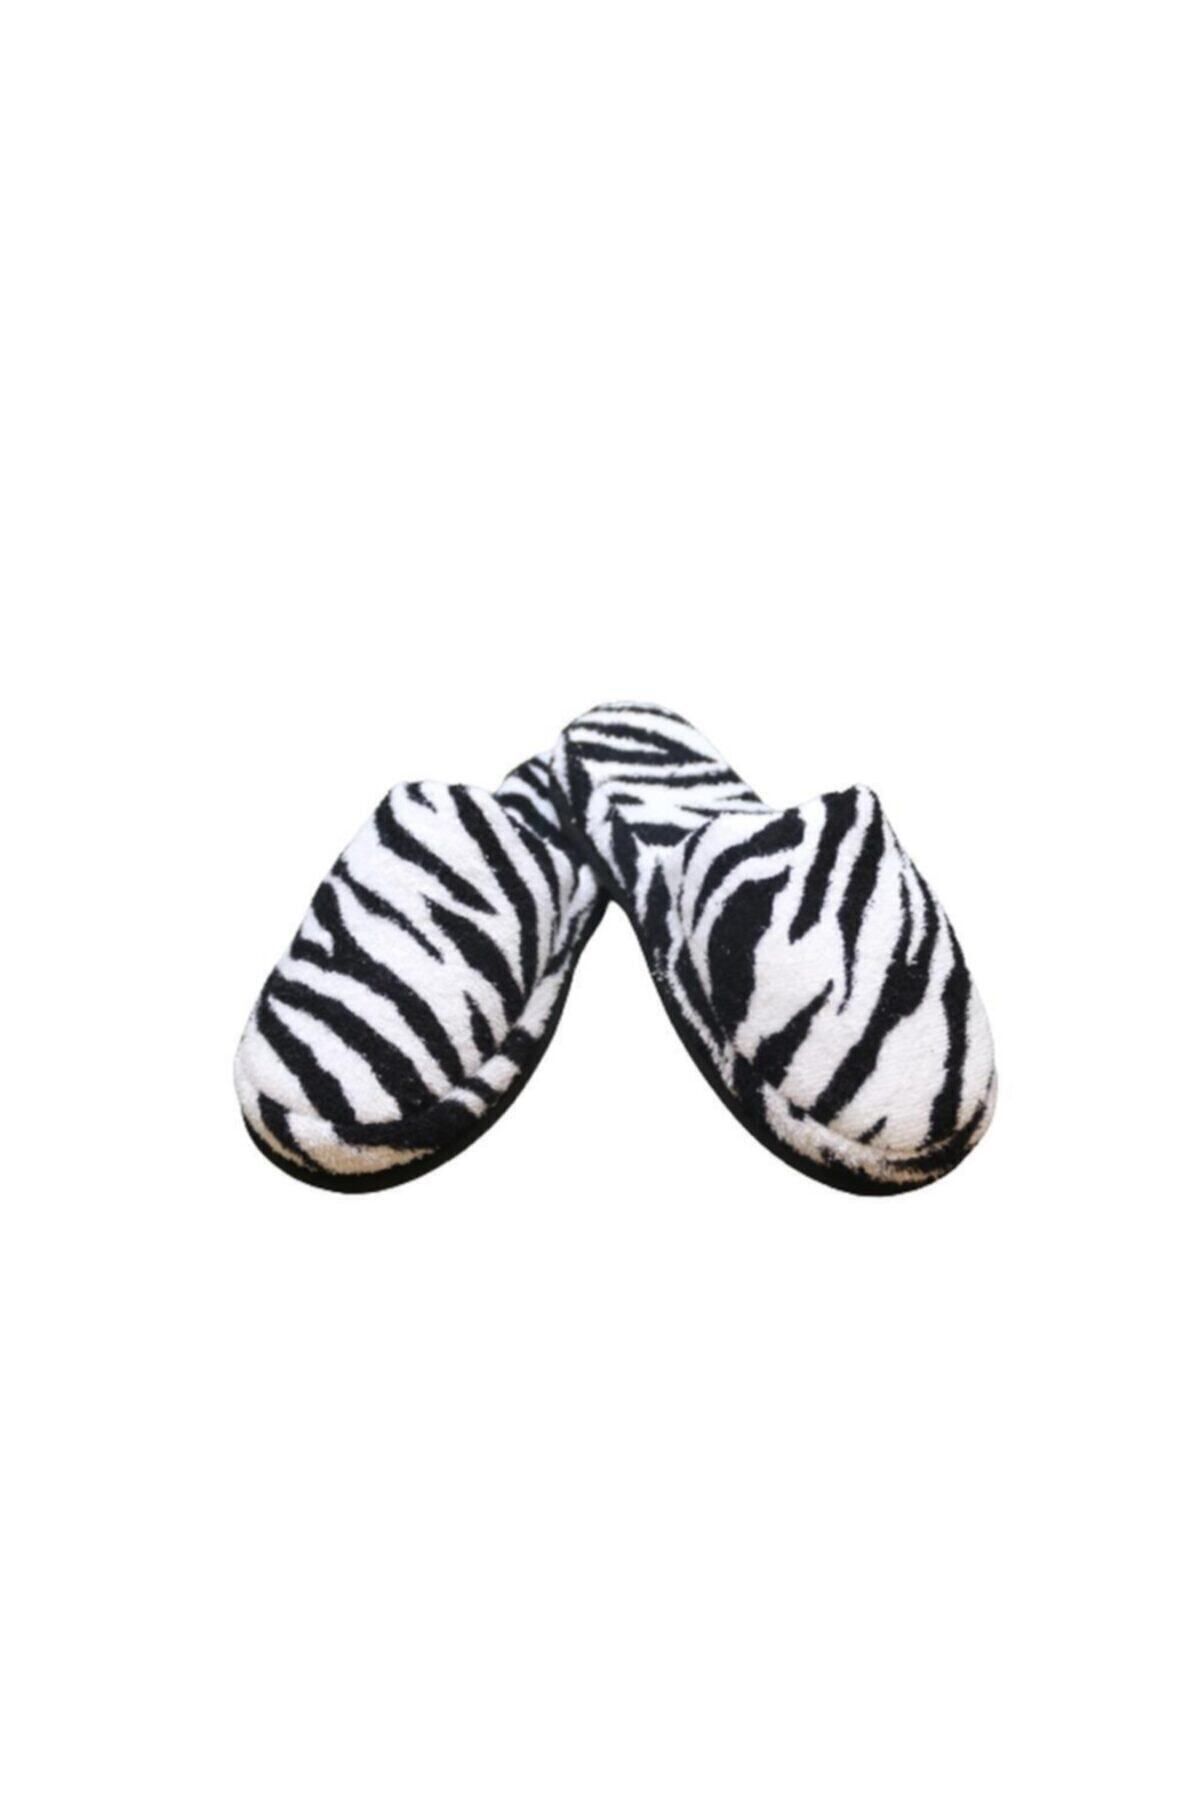 Ender Home Zebra Desen Havlu Banyo Ev Otel Terliği Kaymaz Taban Kapalı Burun